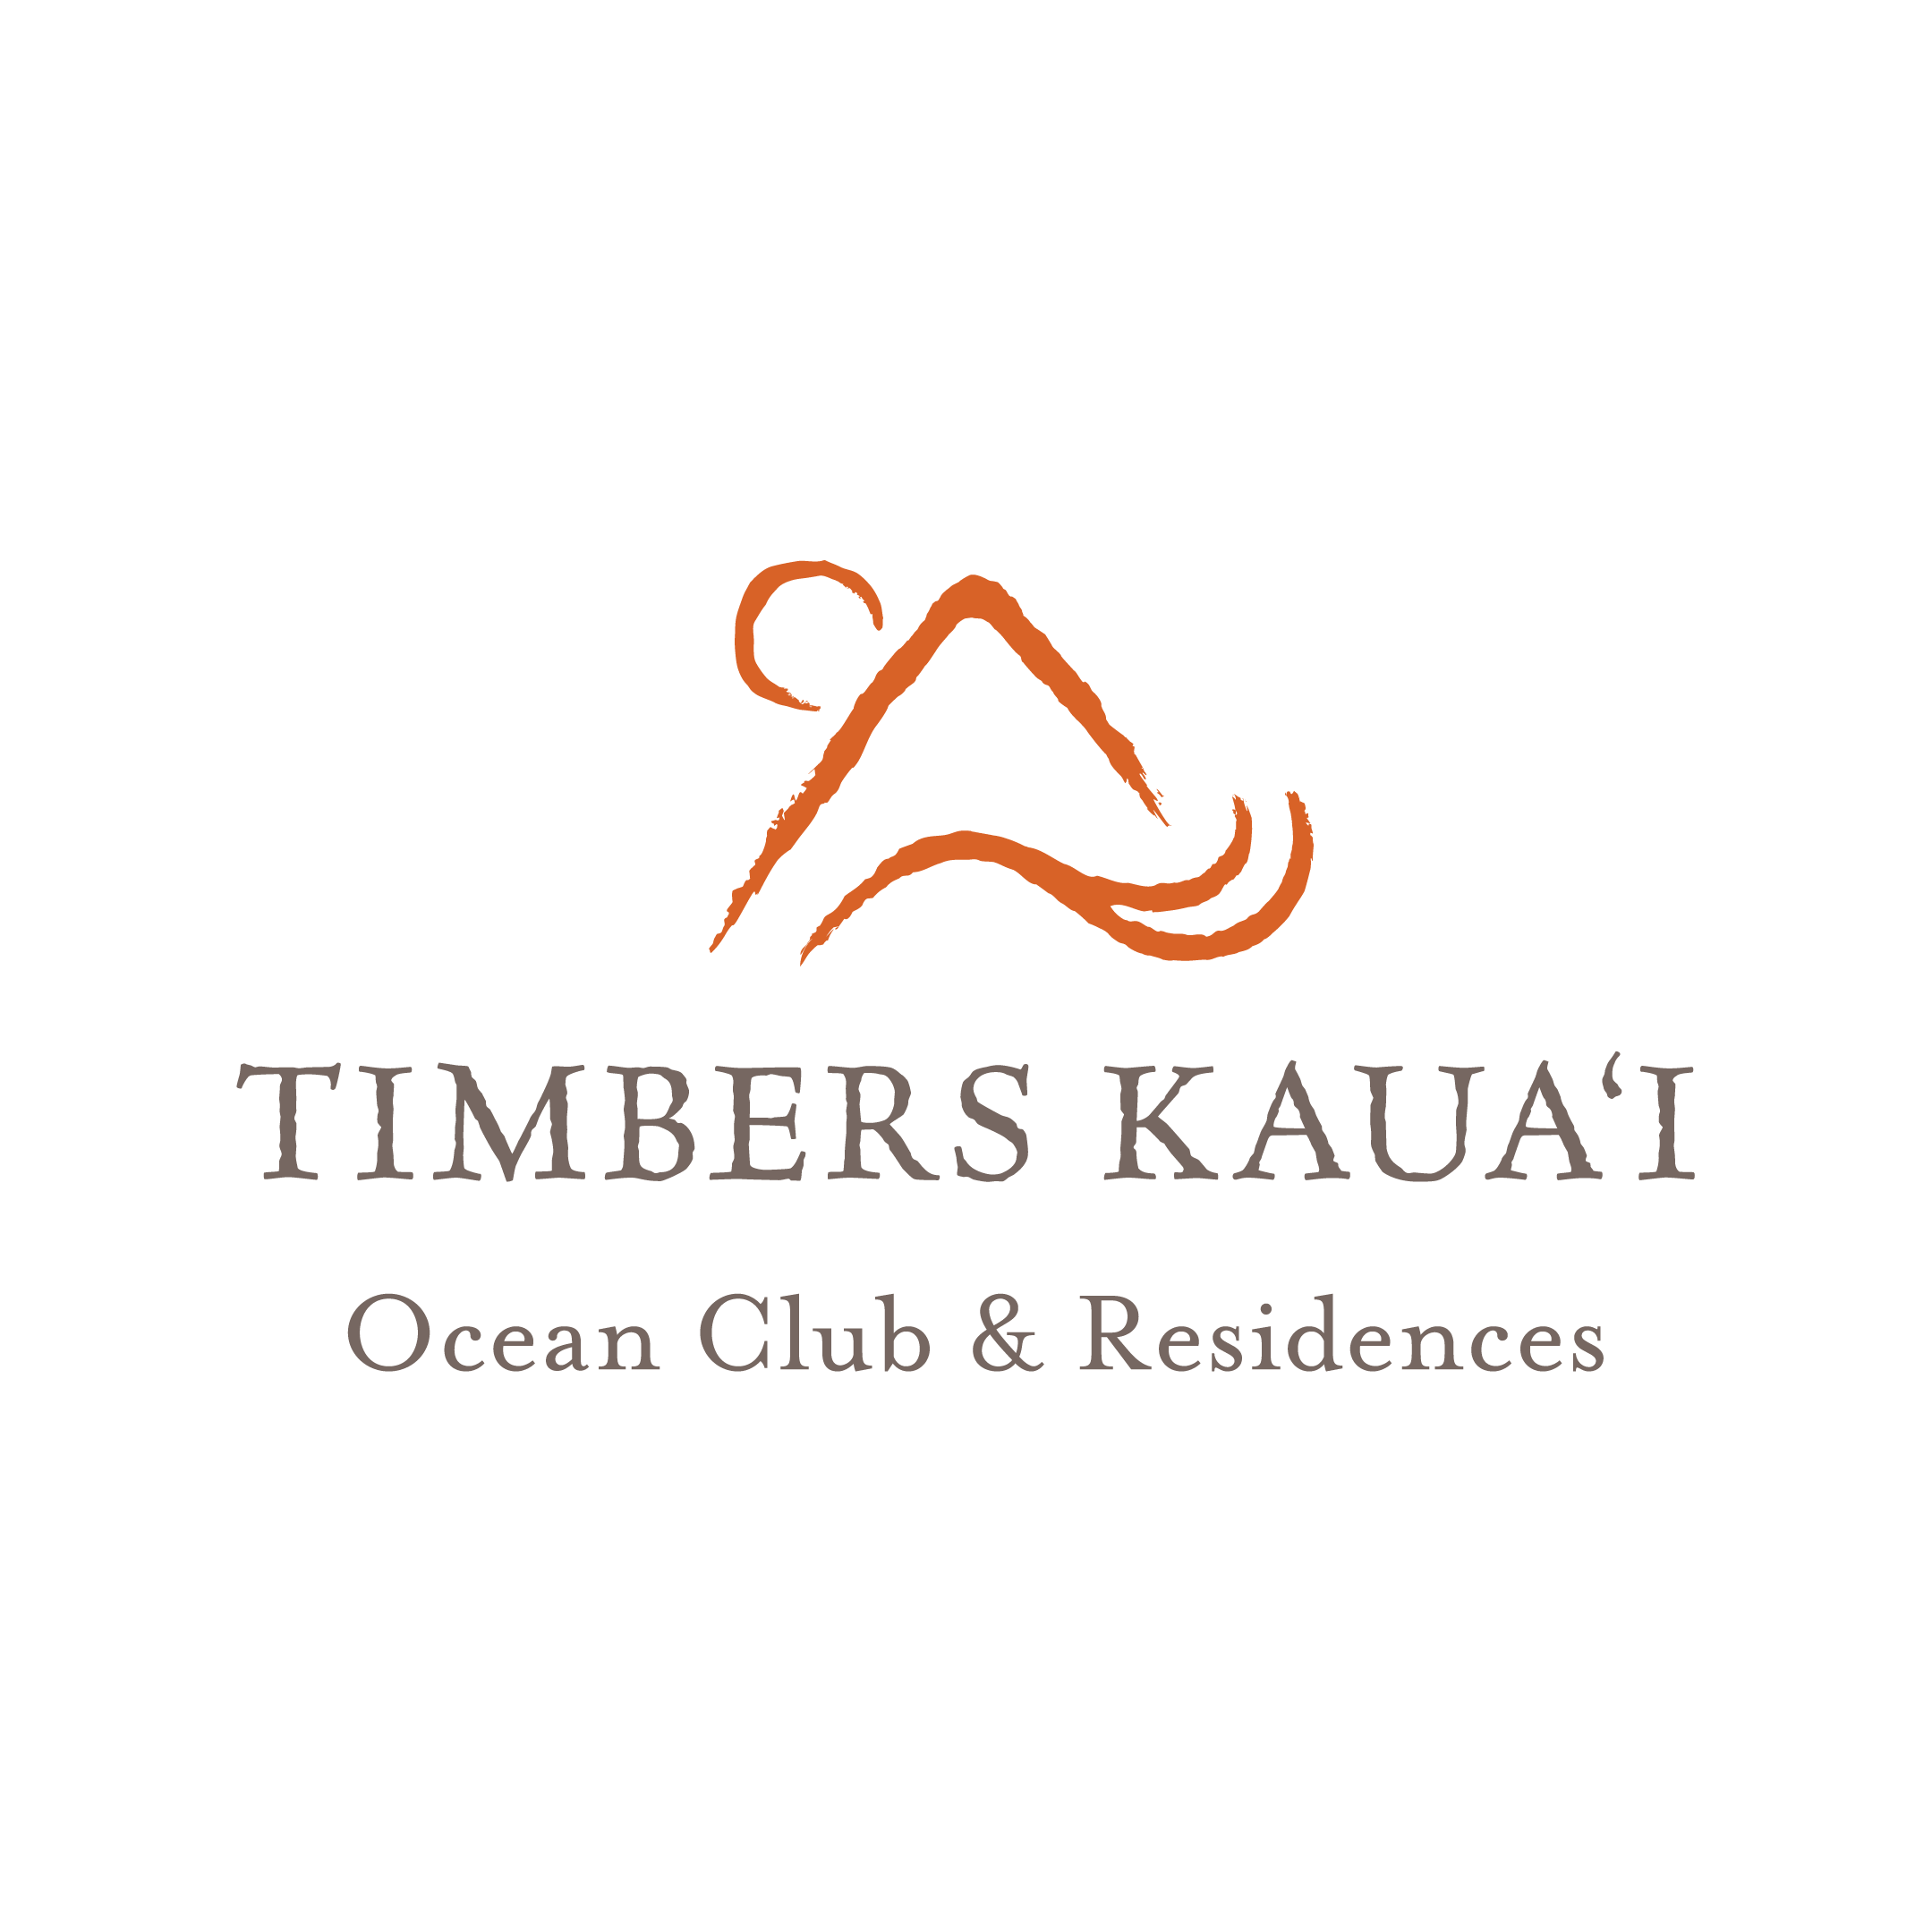 Timbers Kaua‘i - Ocean Club & Residences